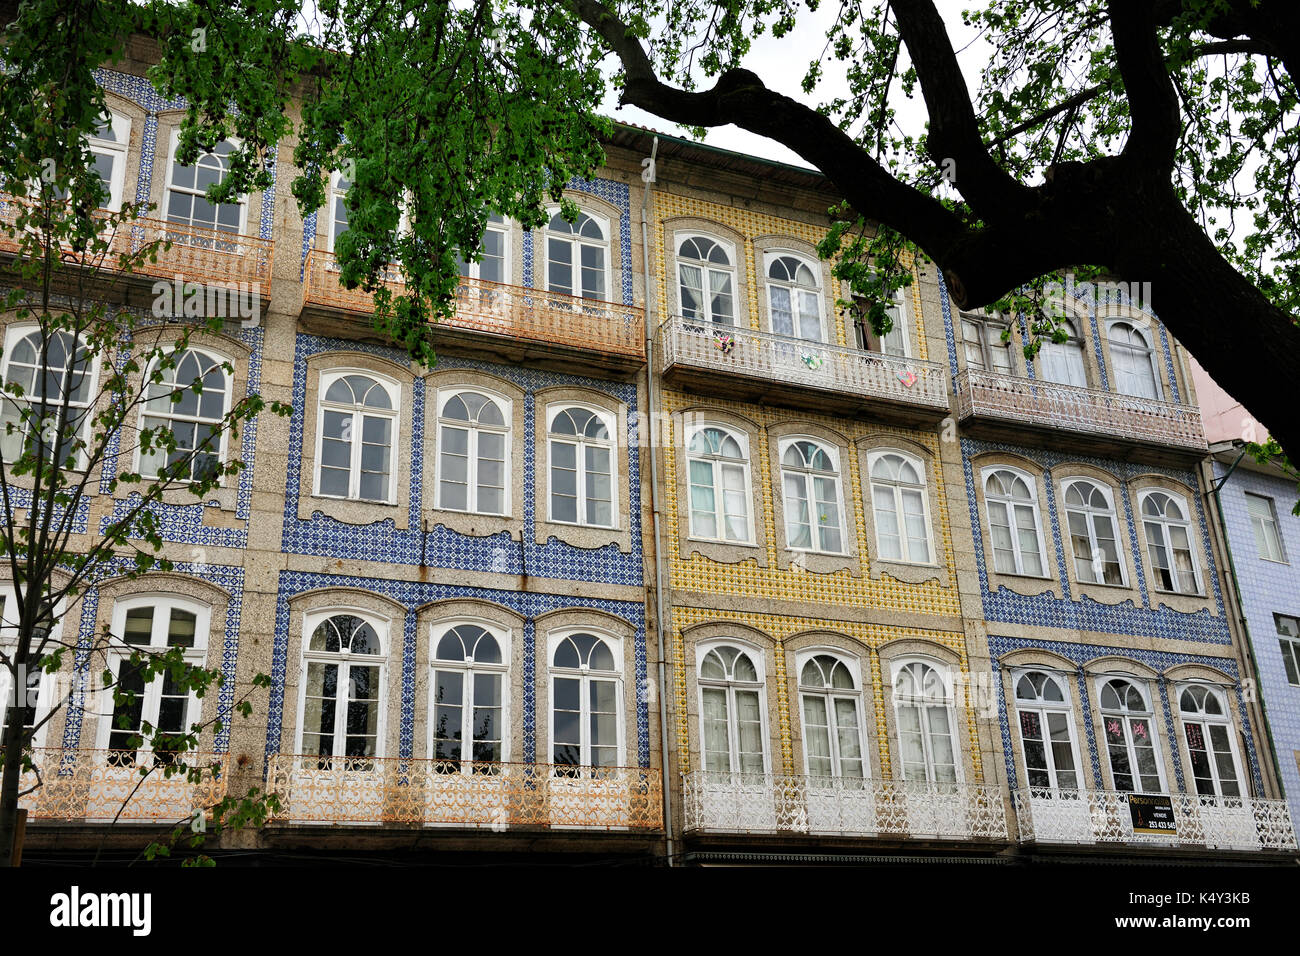 Centre historique de Guimarães, site classé au patrimoine mondial de l'UNESCO. Portugal Banque D'Images